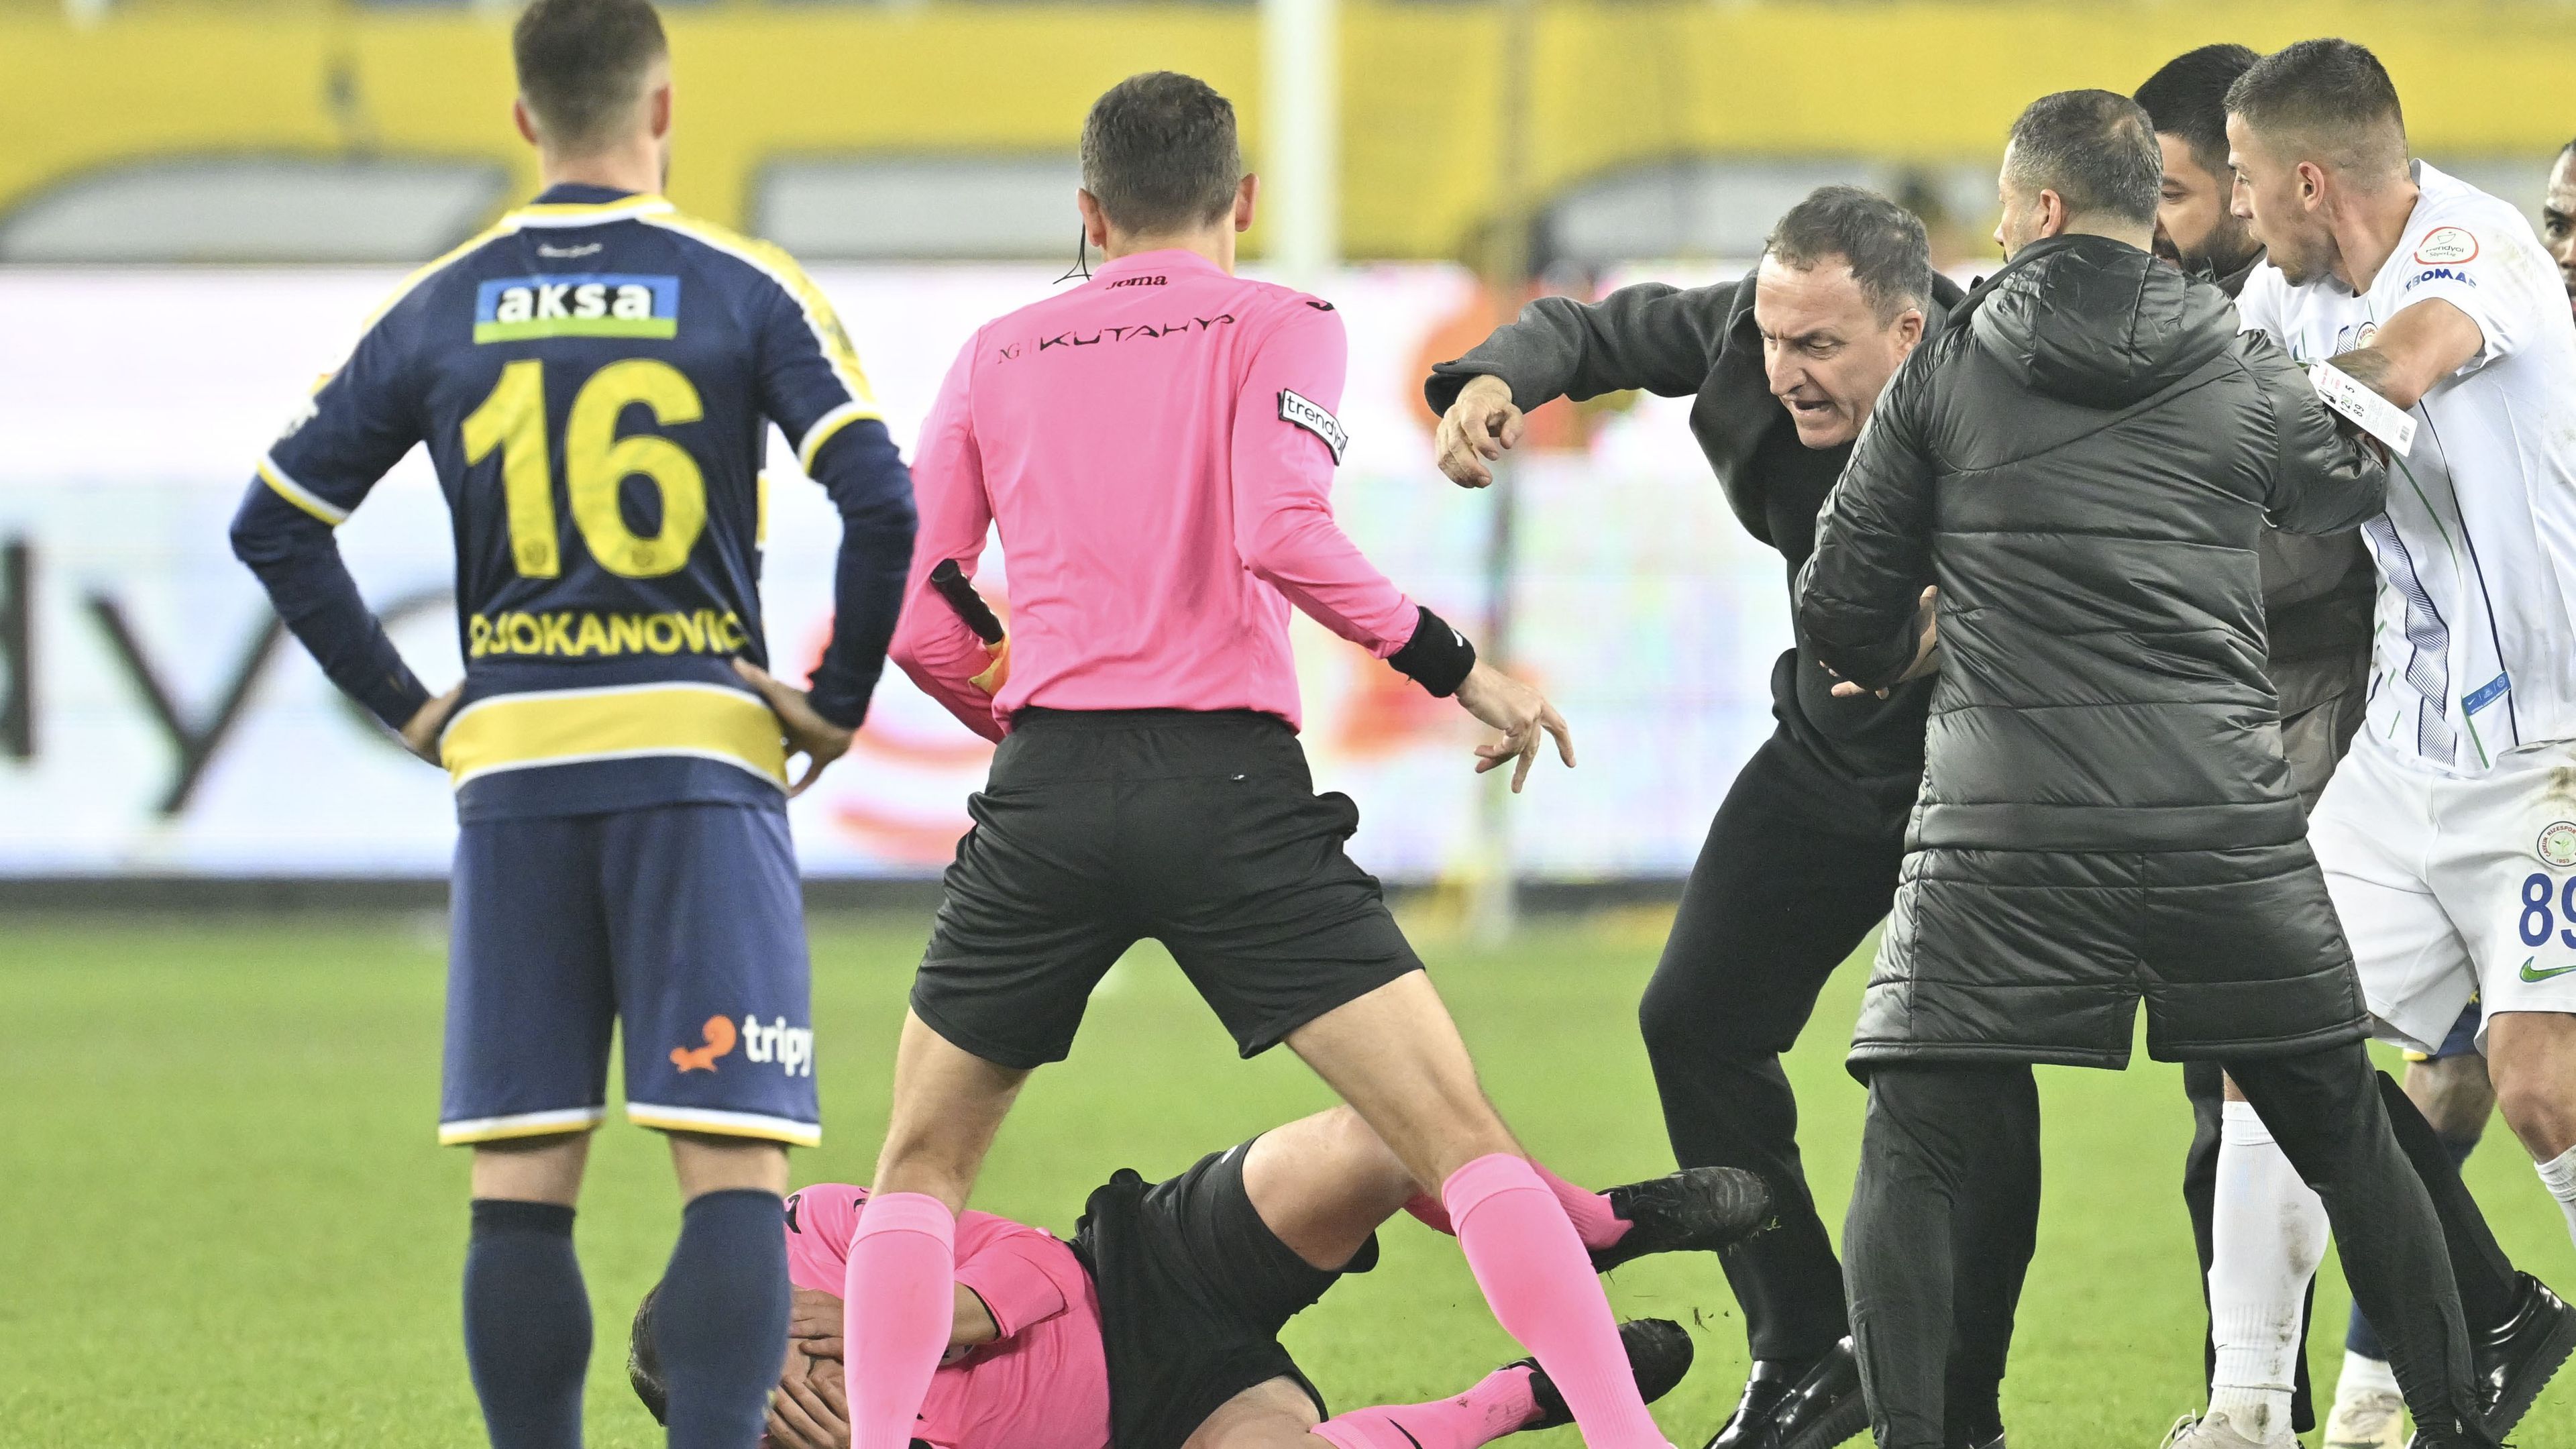 Faruk Koca bántalmazta a játékvezetőt, amelynek következtében a szövetség felfüggesztette a bajnokságot, az Ankaragücü elnöke pedig súlyos büntetésre számíthat. (Fotó: Getty Images)